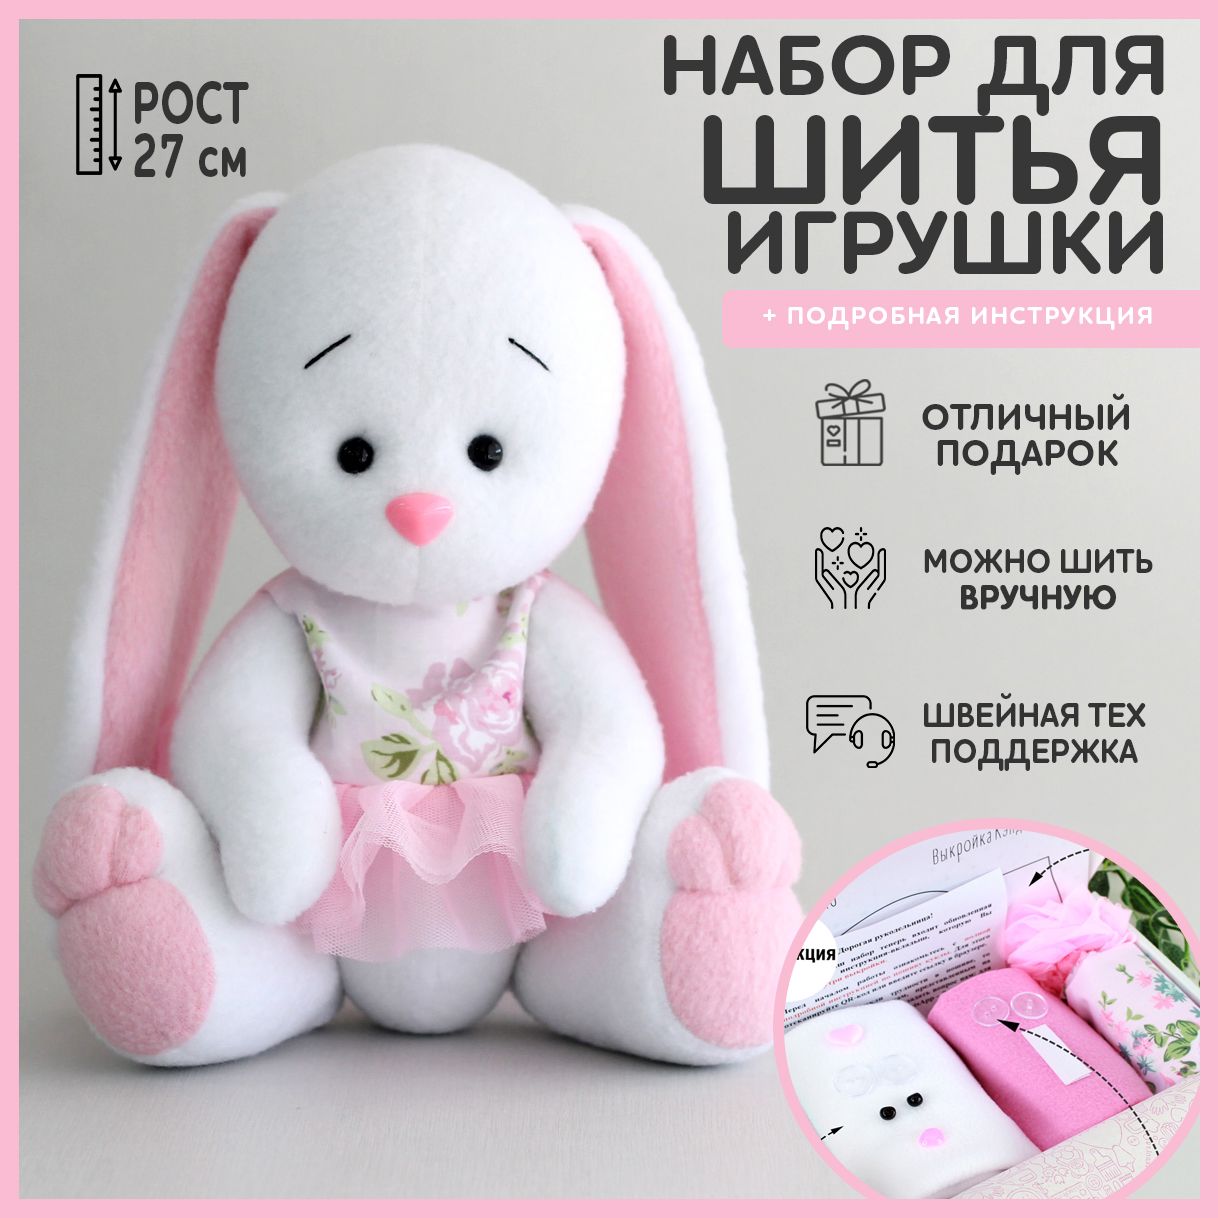 Блог интернет-магазина bears-teddy.ru